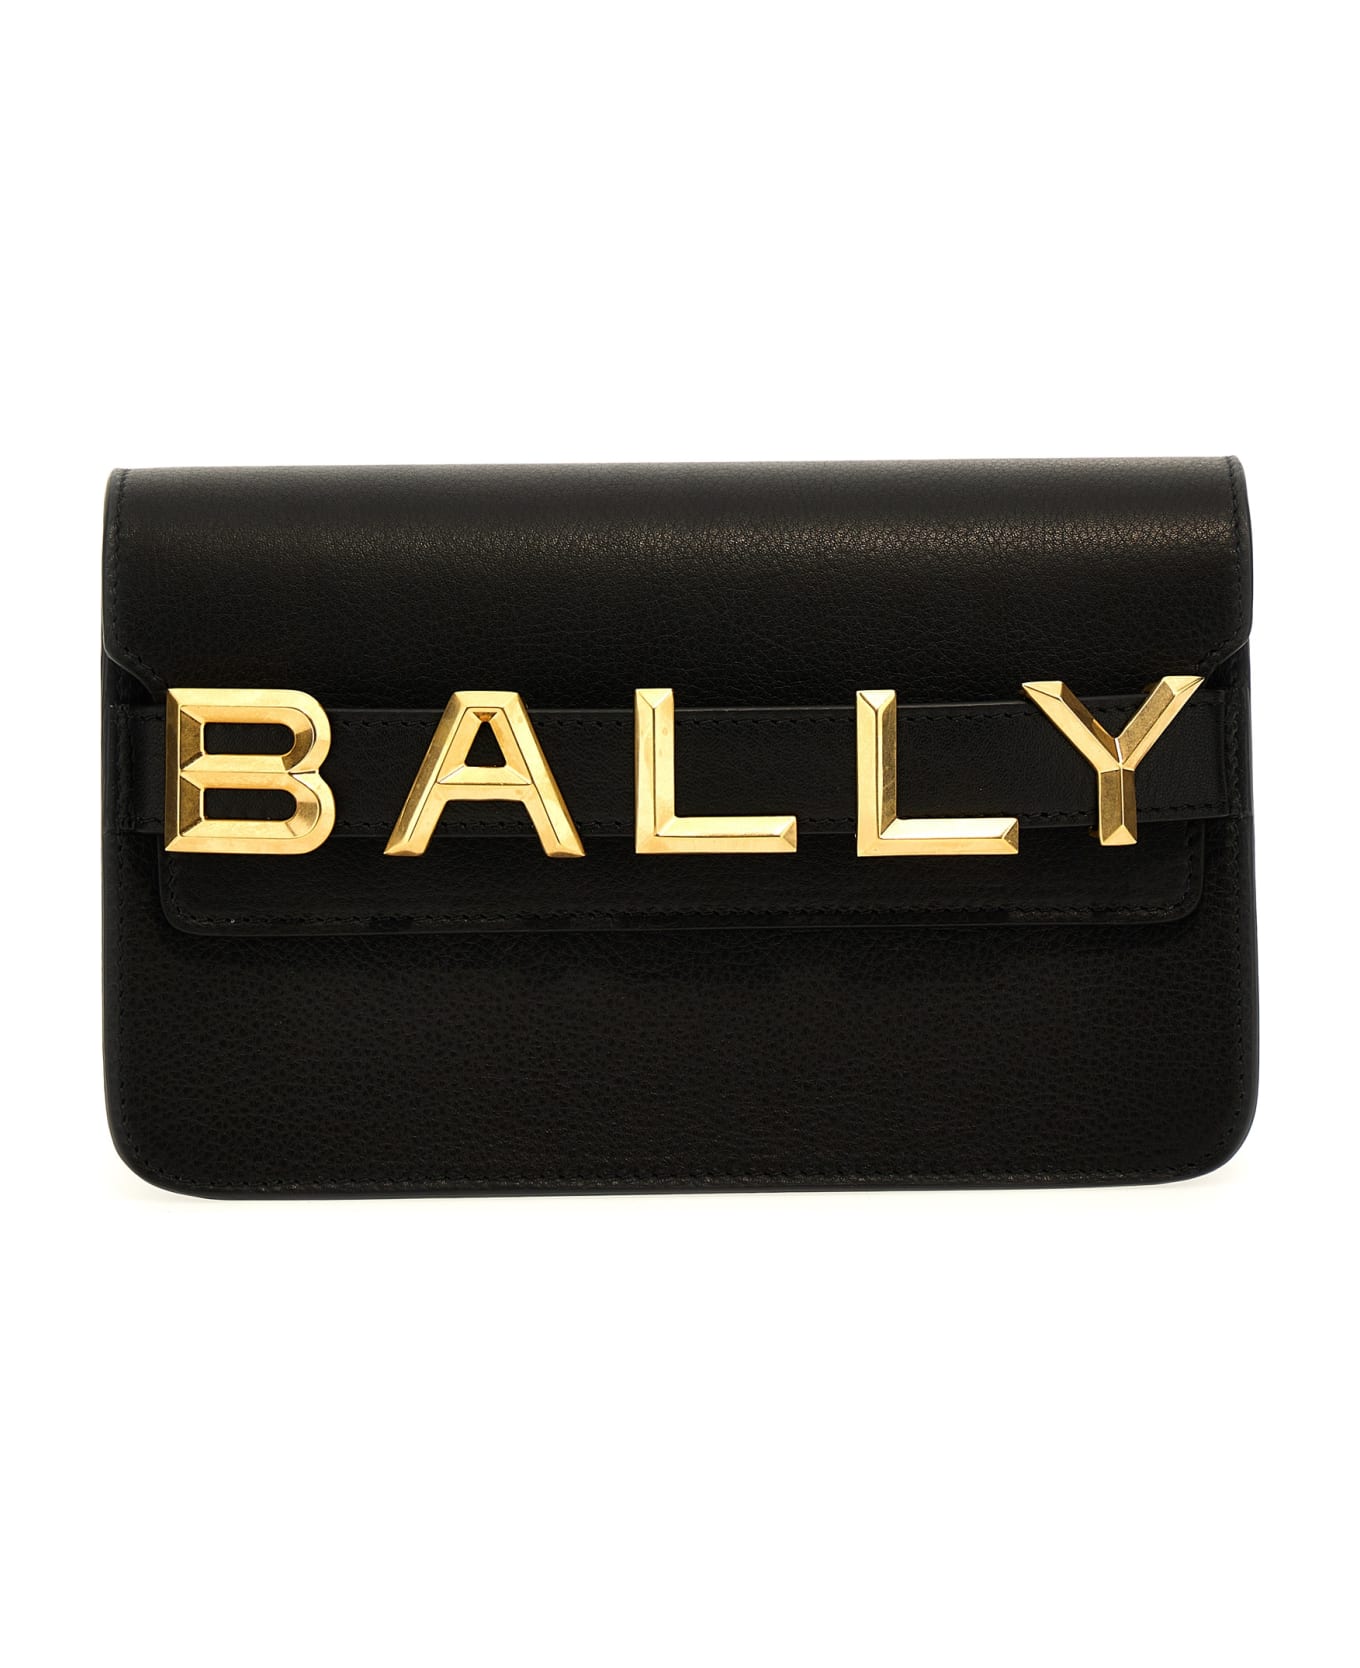 Bally Logo Crossbody Bag - Black クラッチバッグ